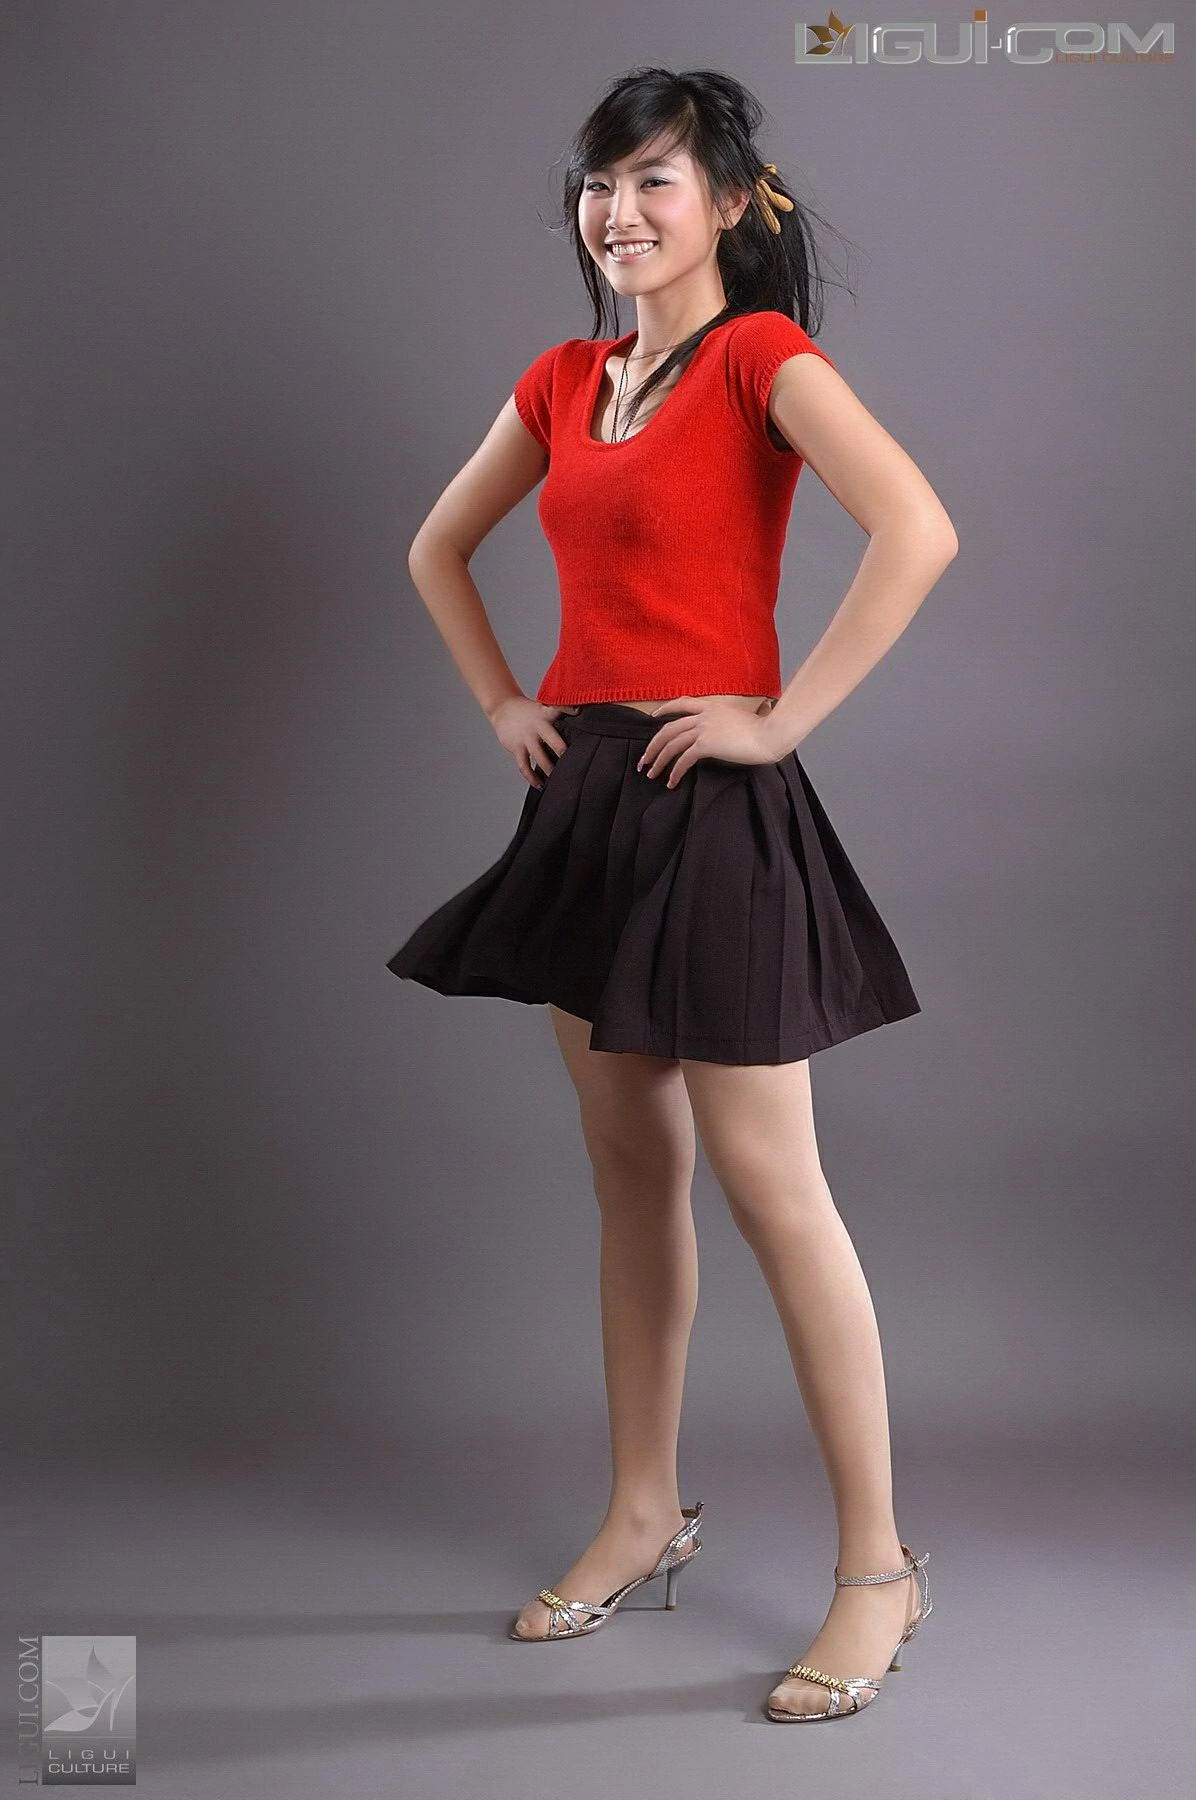 [Ligui丽柜会所]2008-08-17 凌乱美 包莹 红色短袖与黑色短裙加肉色丝袜美腿性感私房写真集,